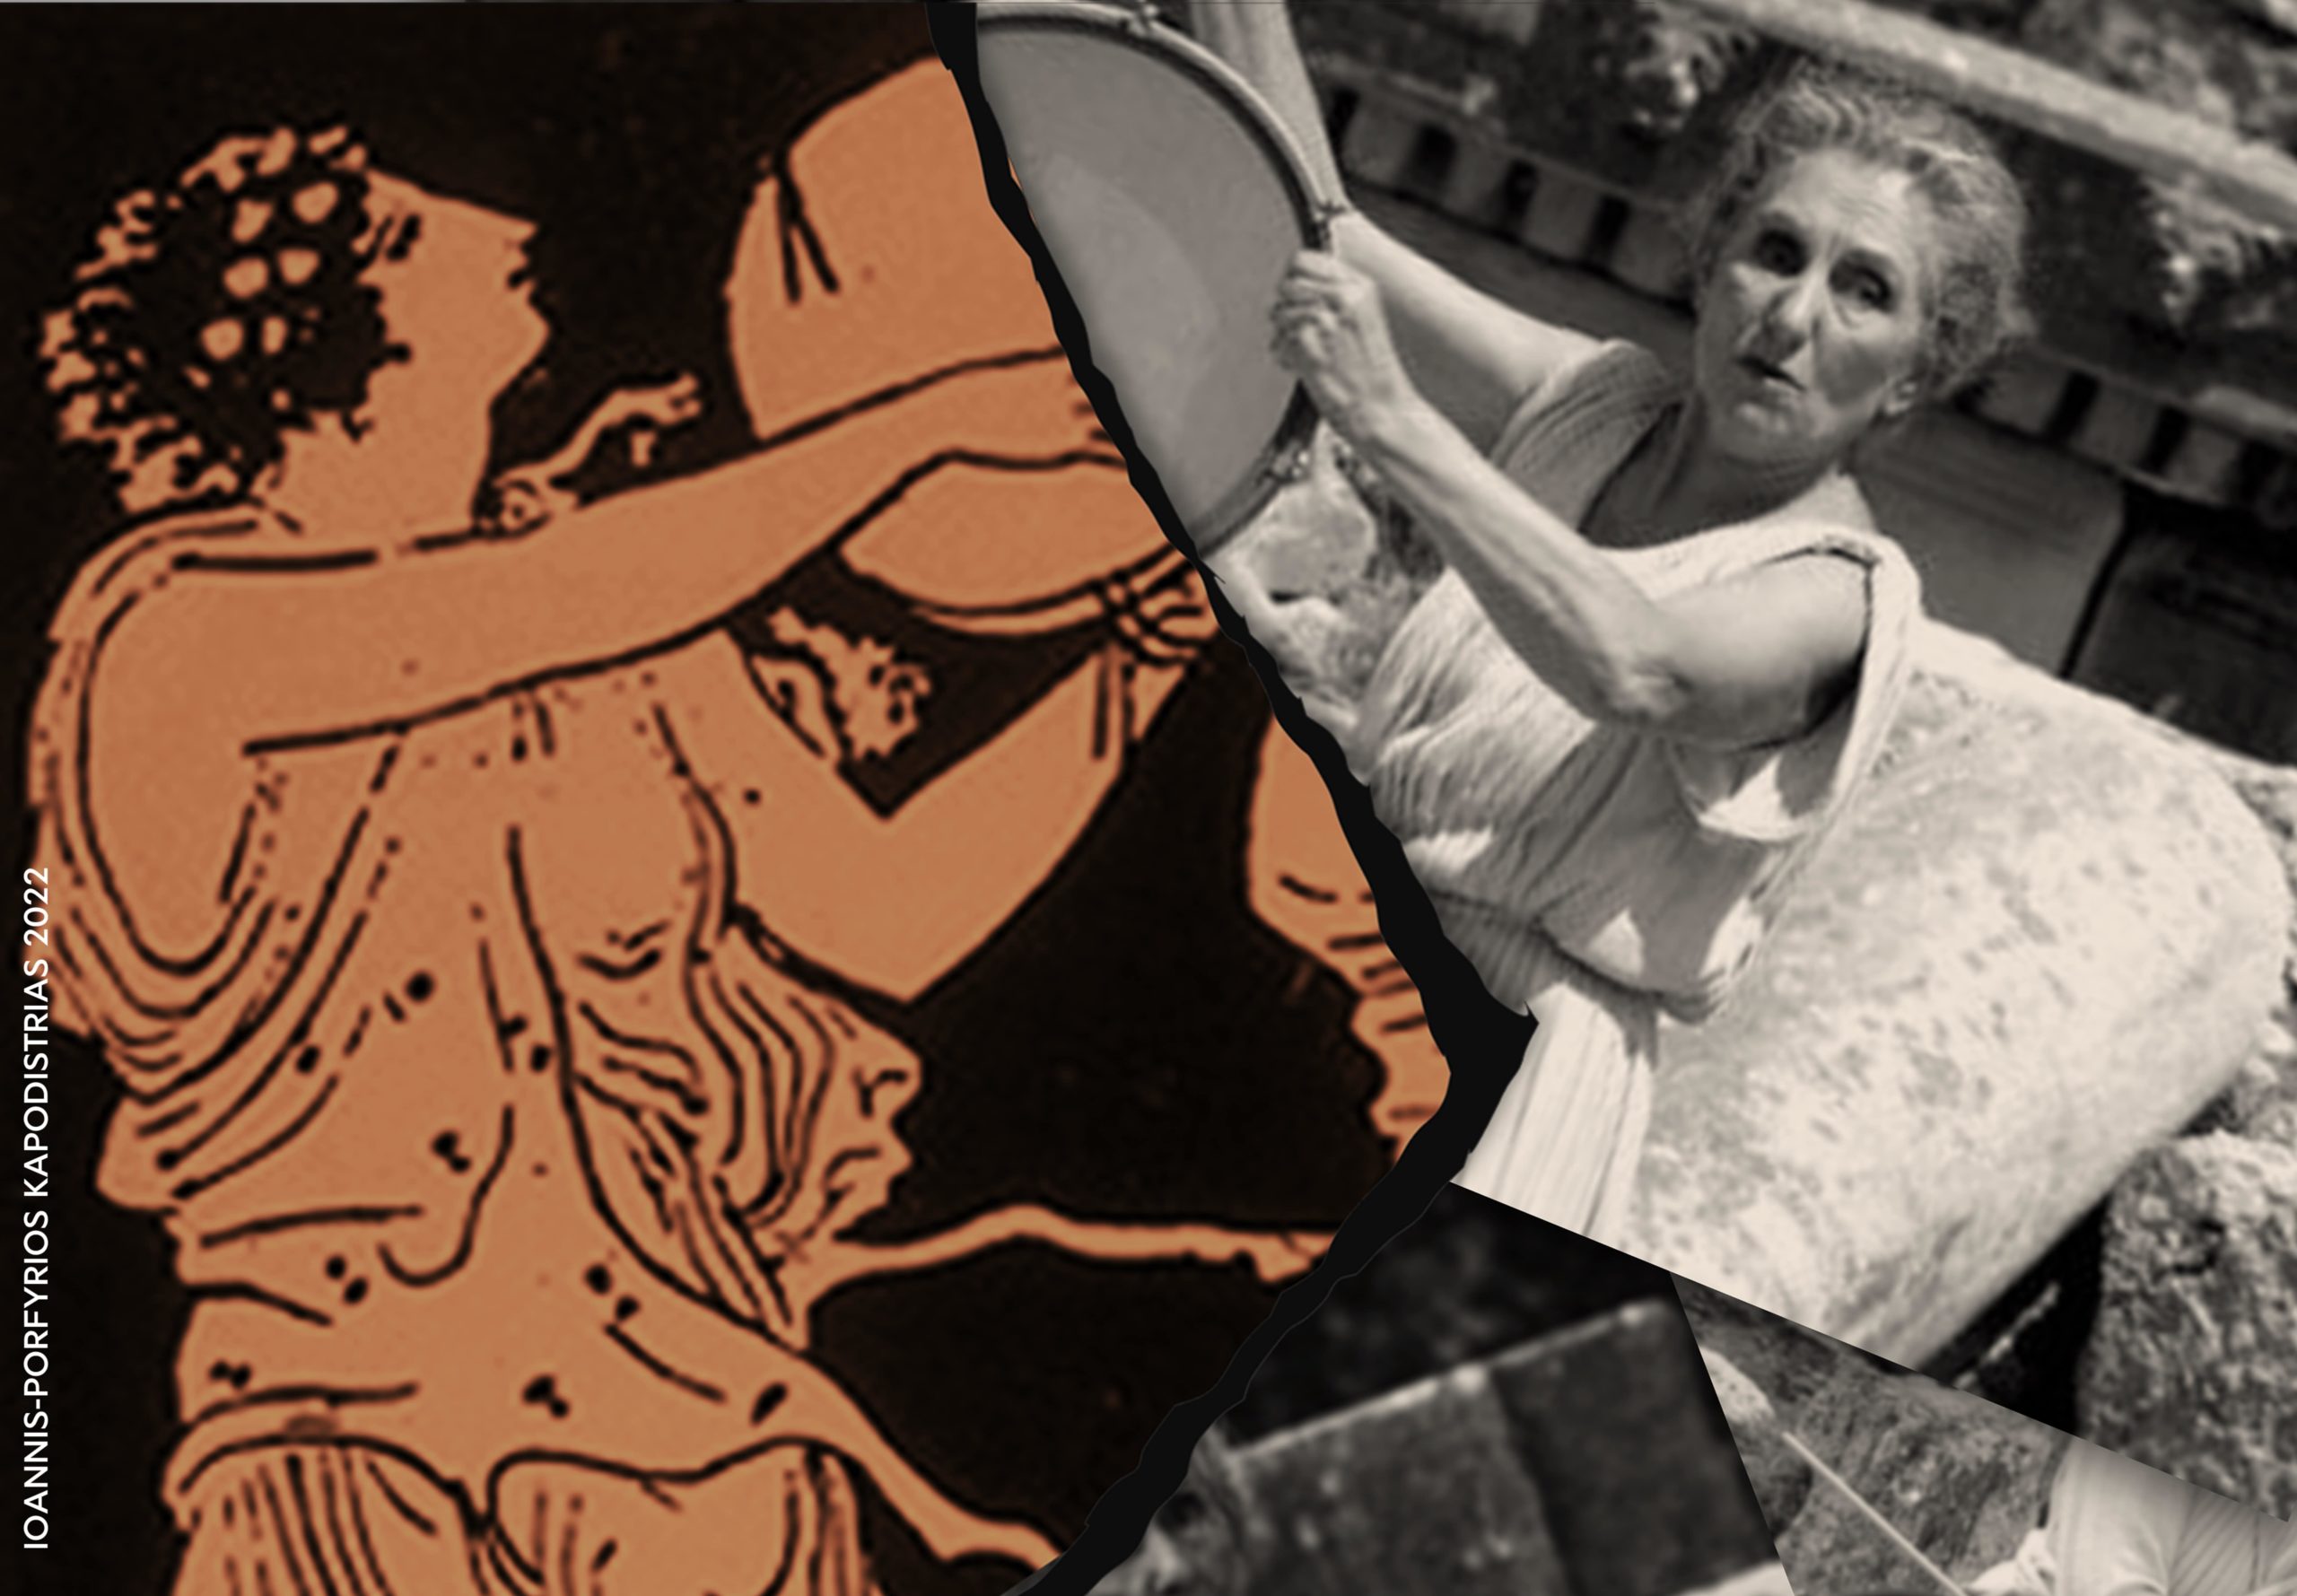 Αφιέρωμα στη μεγάλη χορογράφο Μαρία Χορς στο Μέγαρο Μουσικής Αθηνών